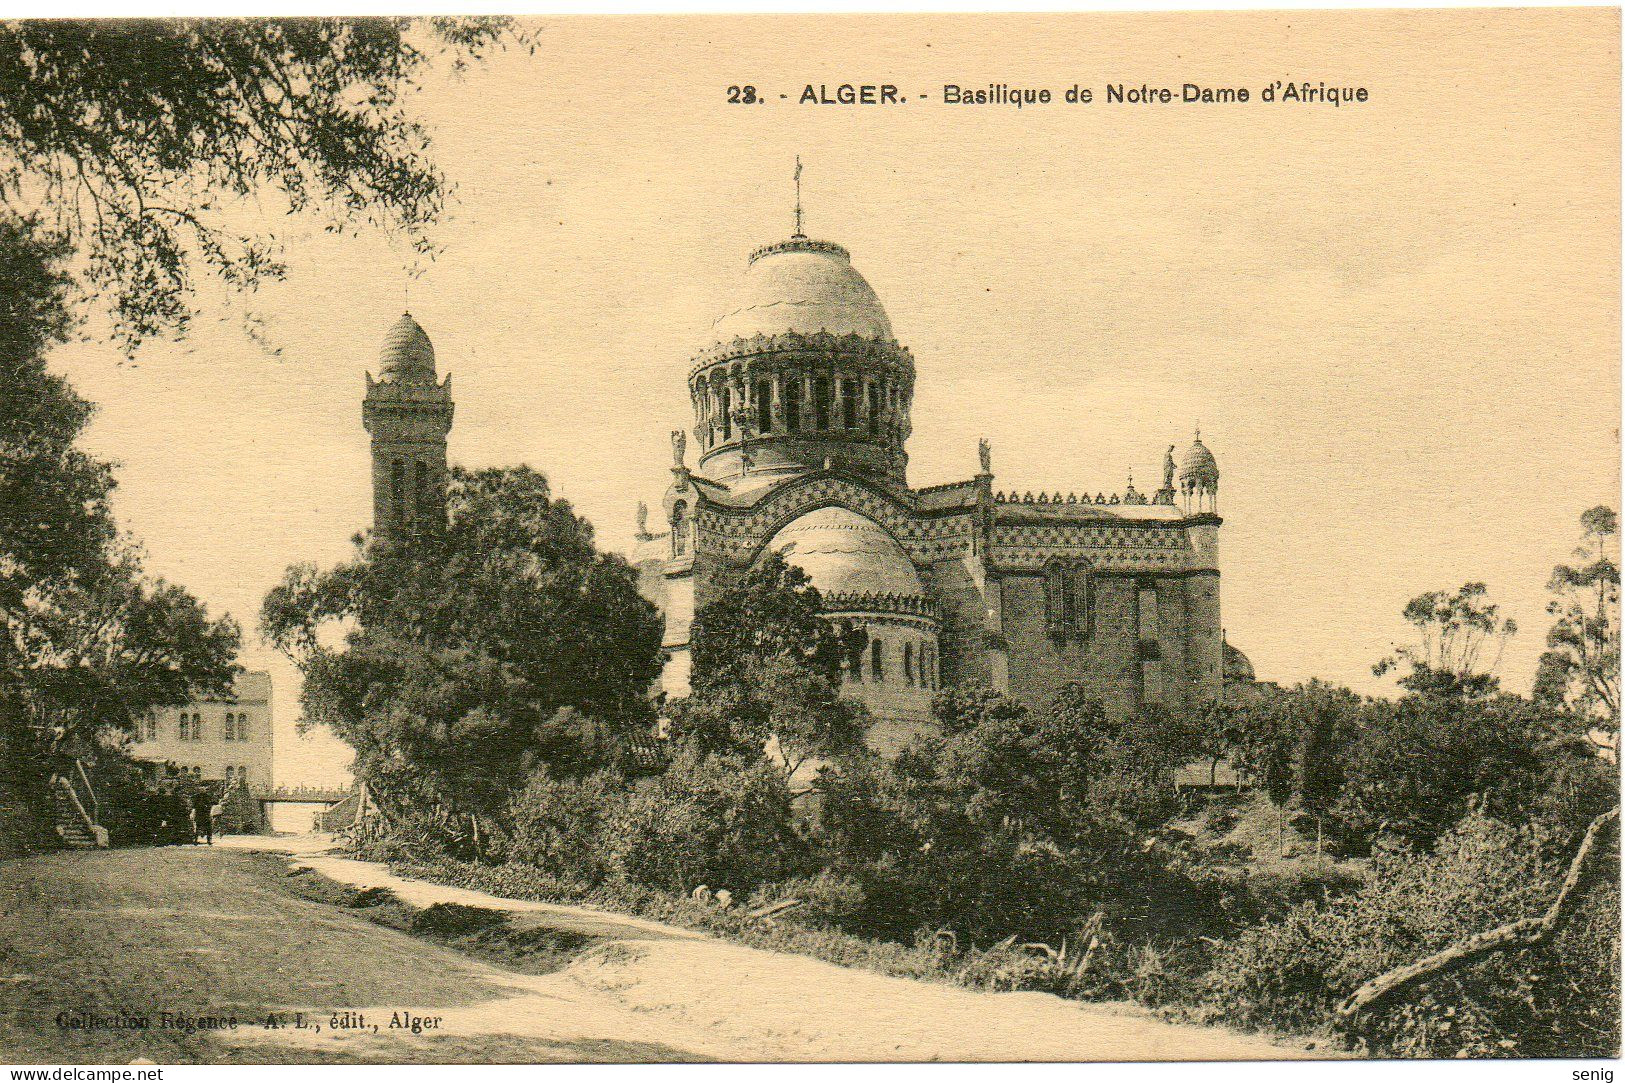 ALGERIE - ALGER - 23 - Basilique Notre Dame D'Afrique - Collection Régence A. L. édit. Alger (Leroux - Algiers